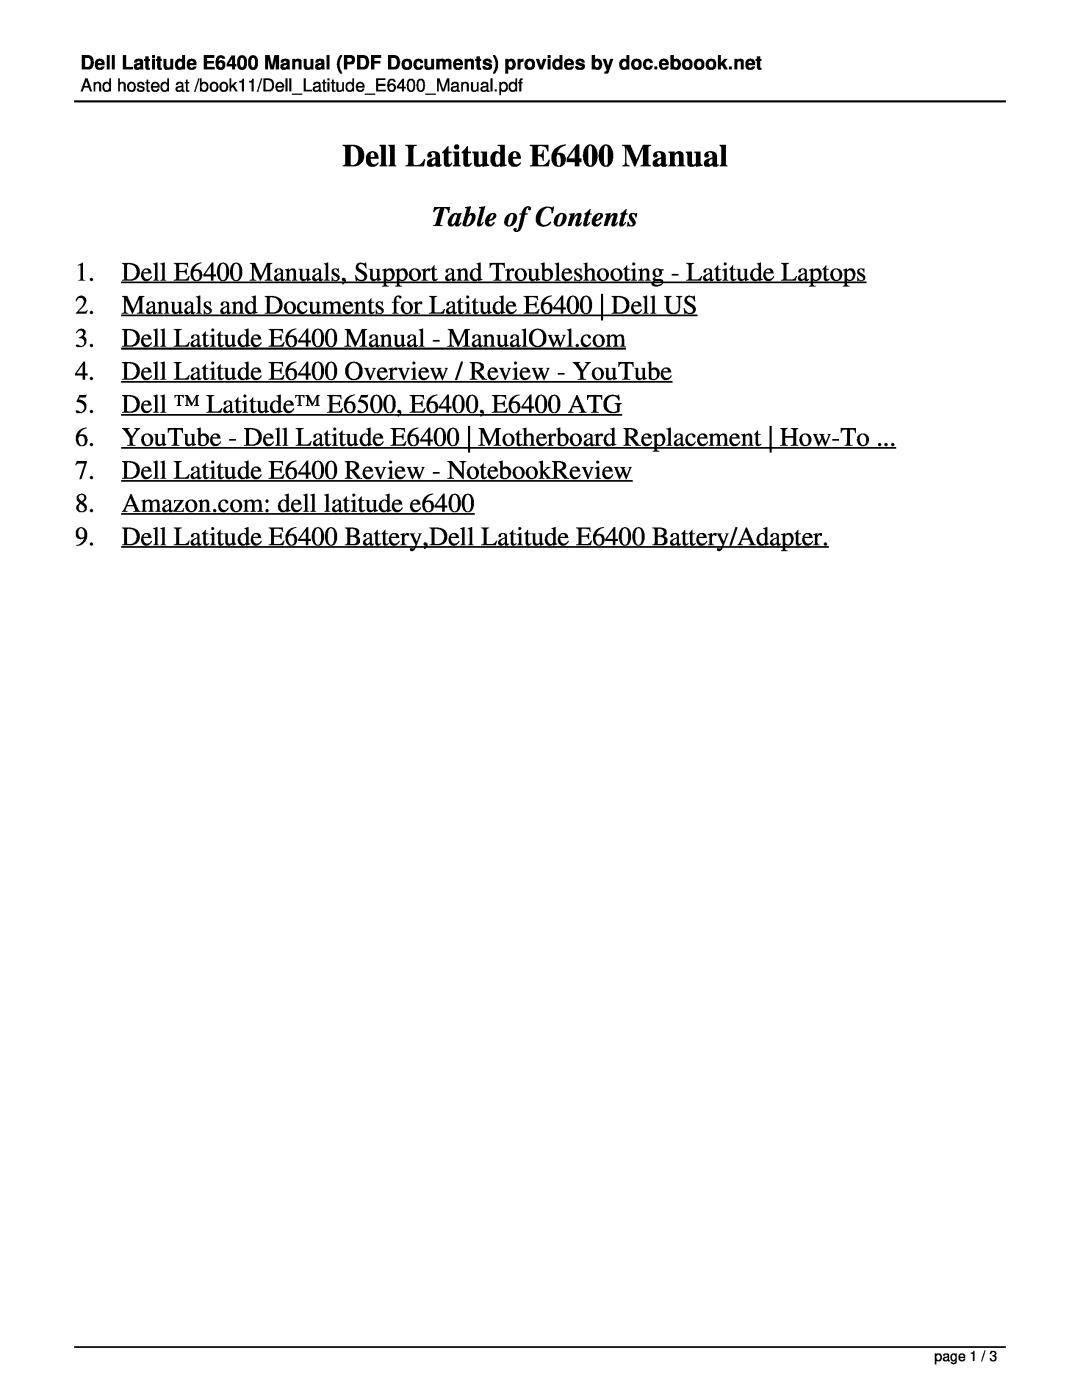 Dell manual Dell Latitude E6400 Manual, Table of Contents 